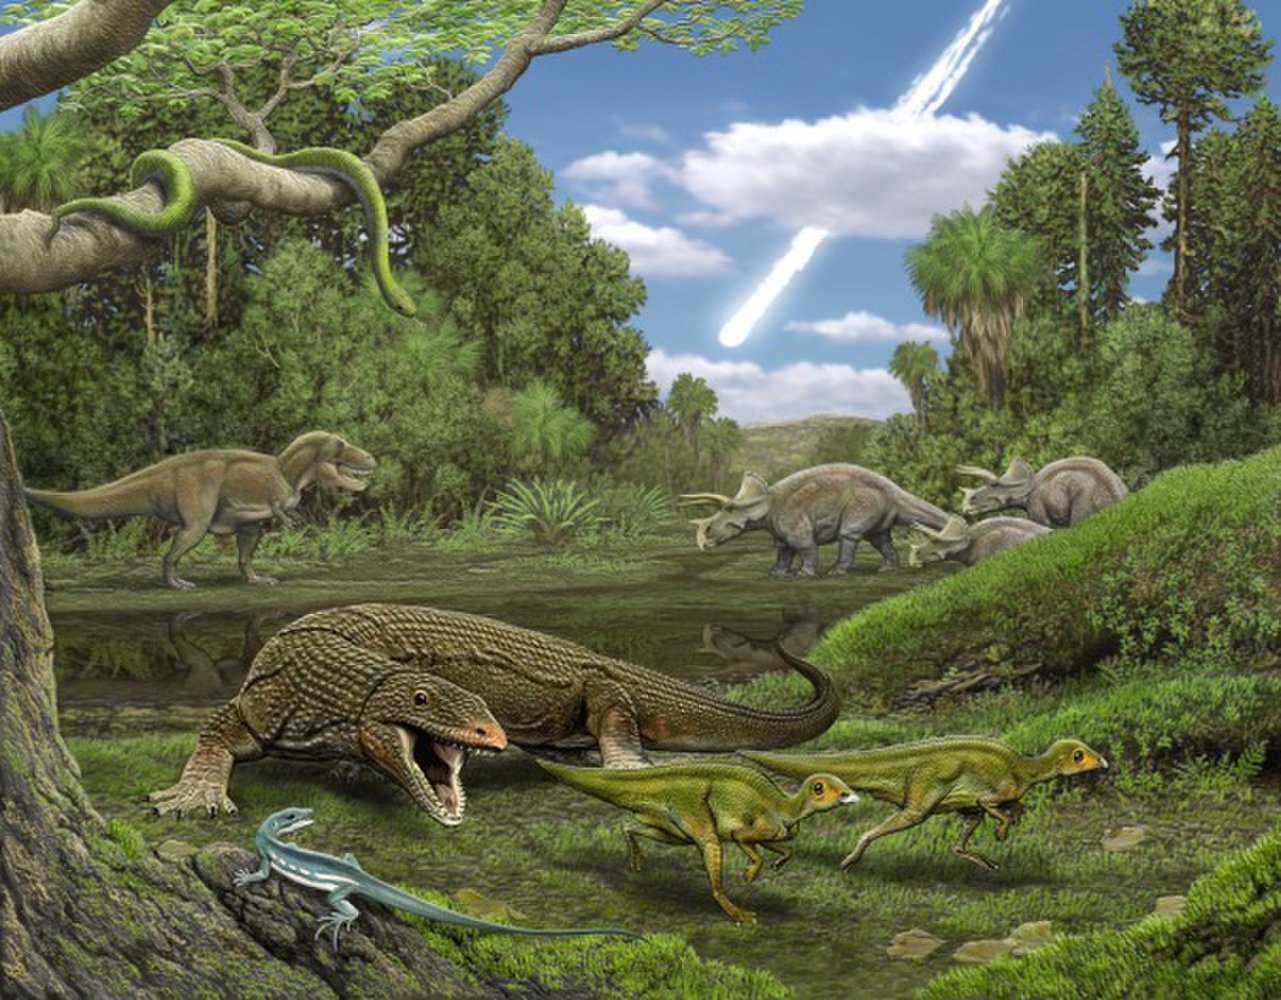 恐龙时代的人类祖先是什么动物？ - 知乎